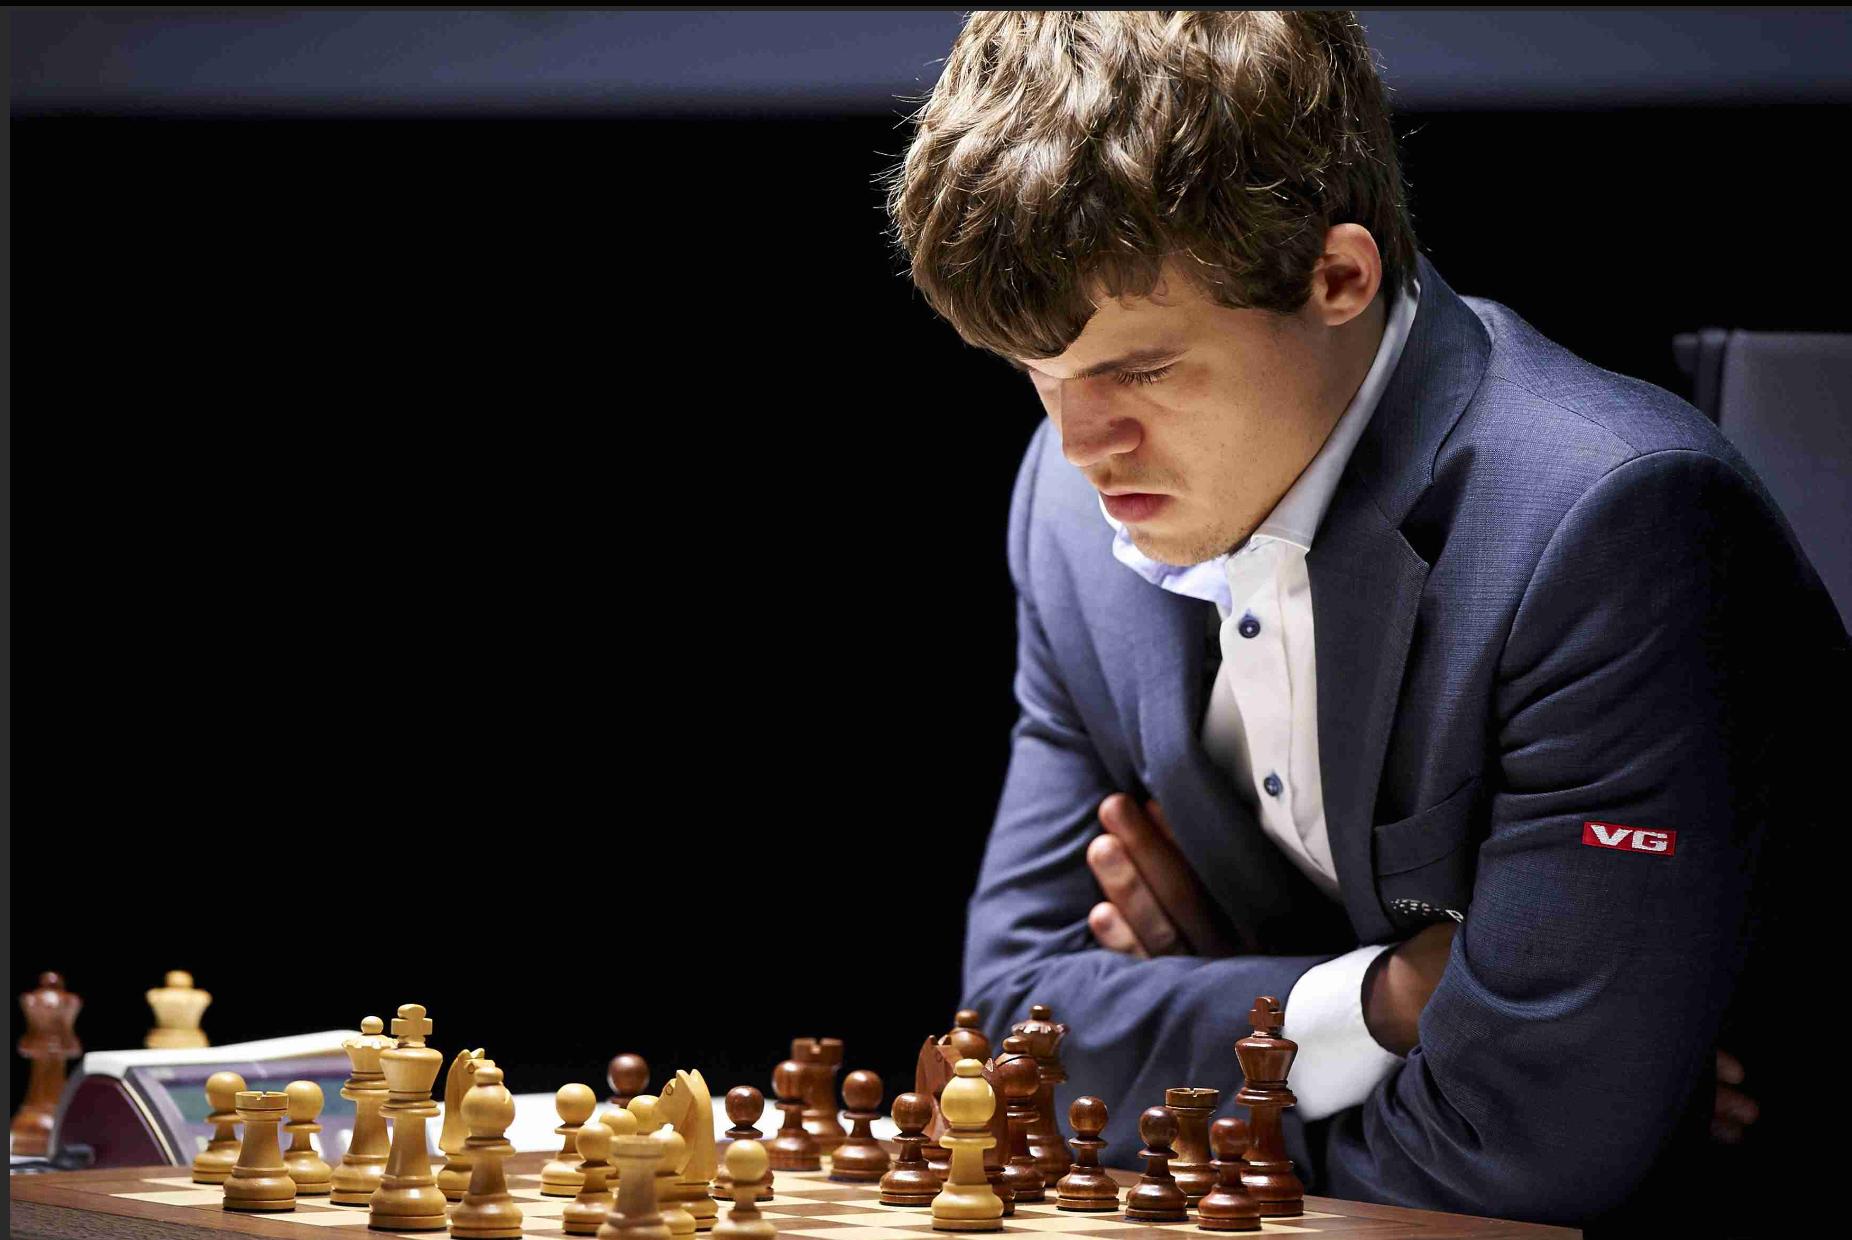 O xadrez realmente desenvolve habilidades mentais ou inteligência? - Quora